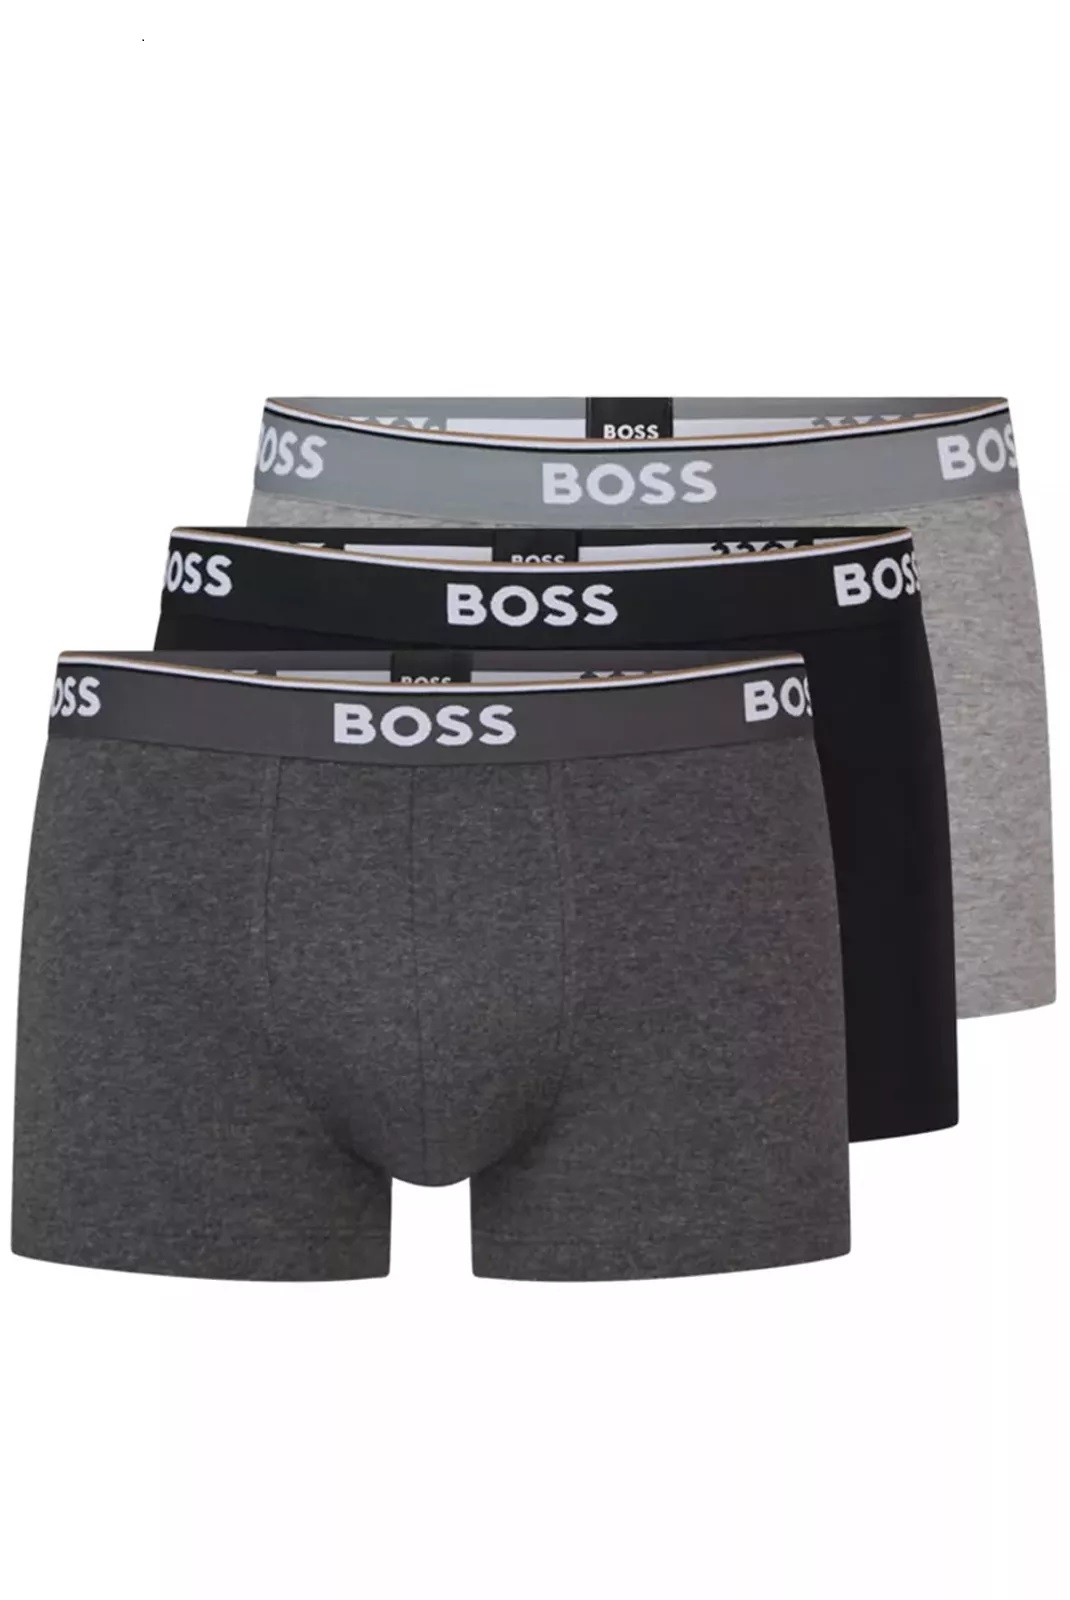 Hugo Boss pánské boxerky 3pack černé a šedé Velikost: XL